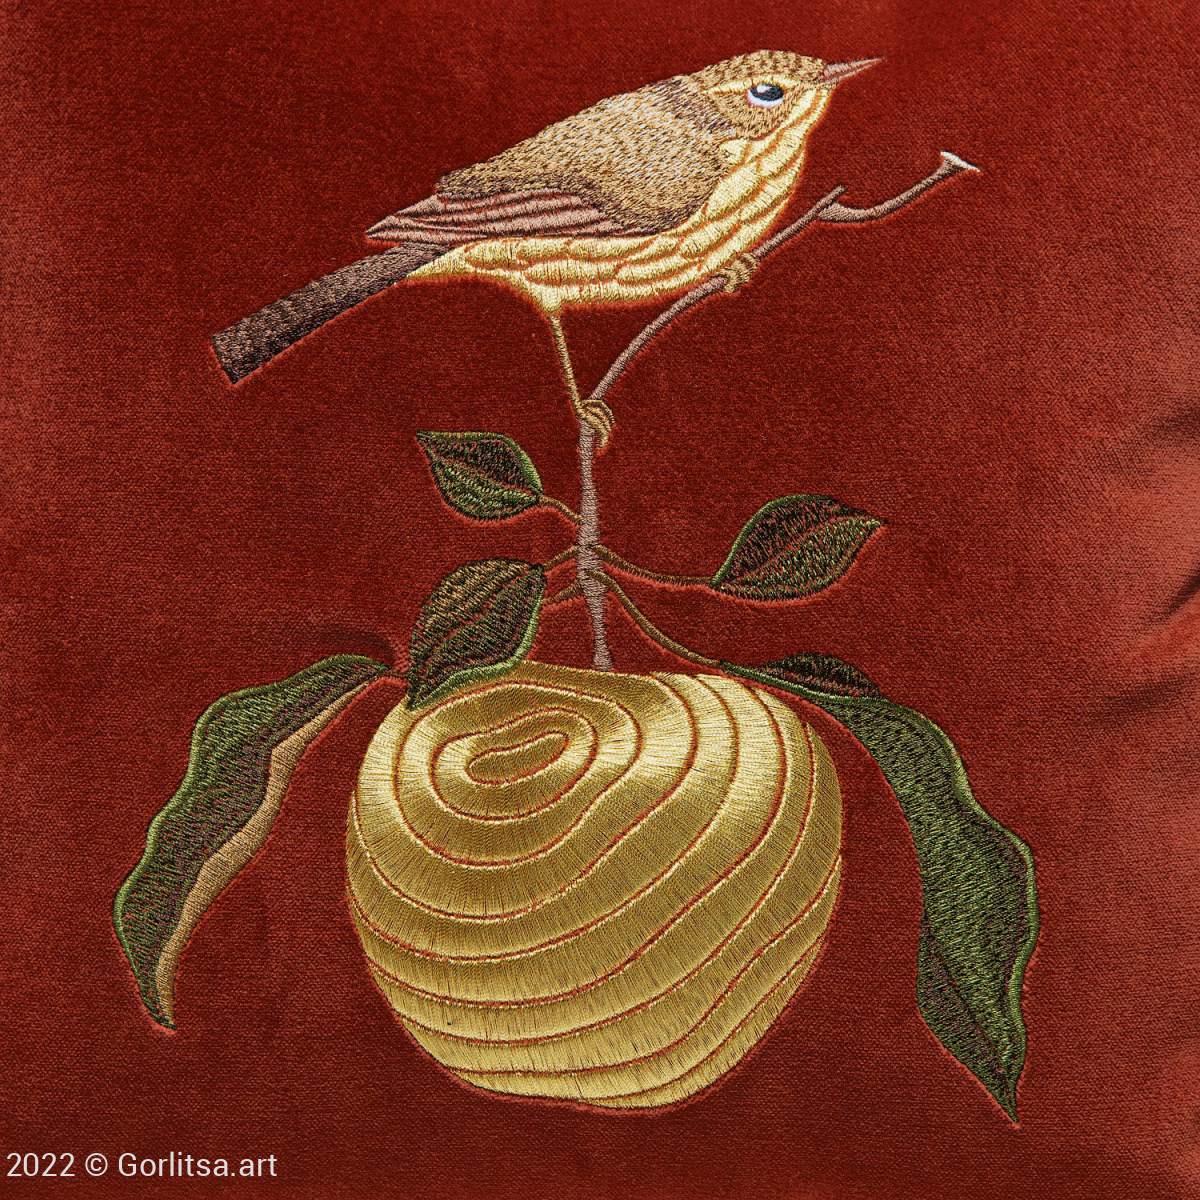 Подушка бархатная «Птичка на яблоке» 62019-4-1, терракотовый / золото, шёлк бархат Никифоровская мануфактура фото 3